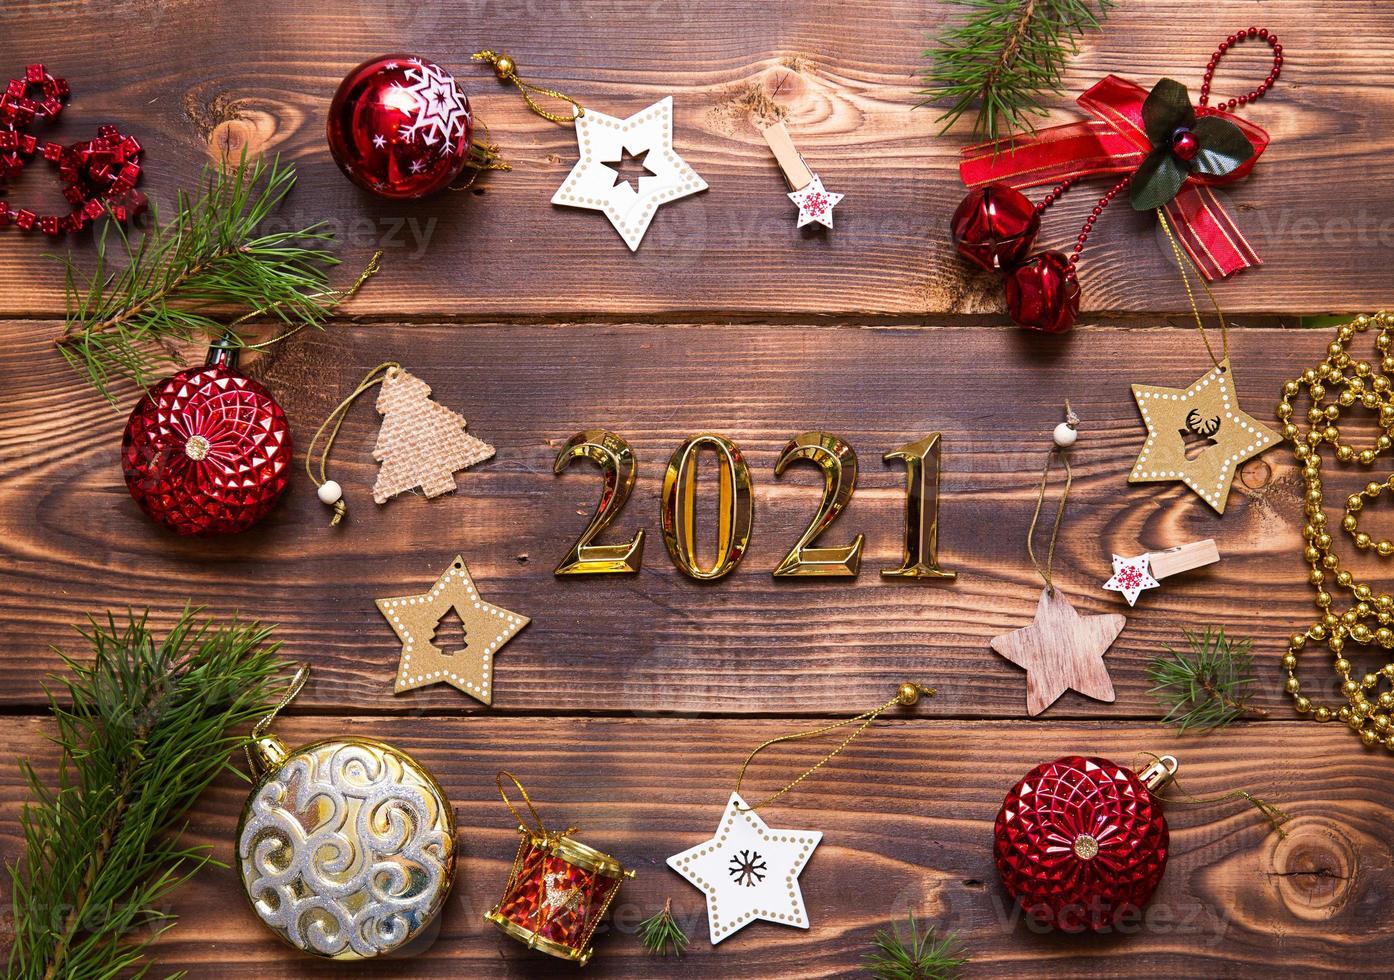 jul platt lägga med ny år 2021 symbol av guld tal i de Centrum. Semester atmosfär, trä- stjärnor, leksaker, pärlor, röd bollar, gran grenar på en mörk bakgrund. Plats för text foto